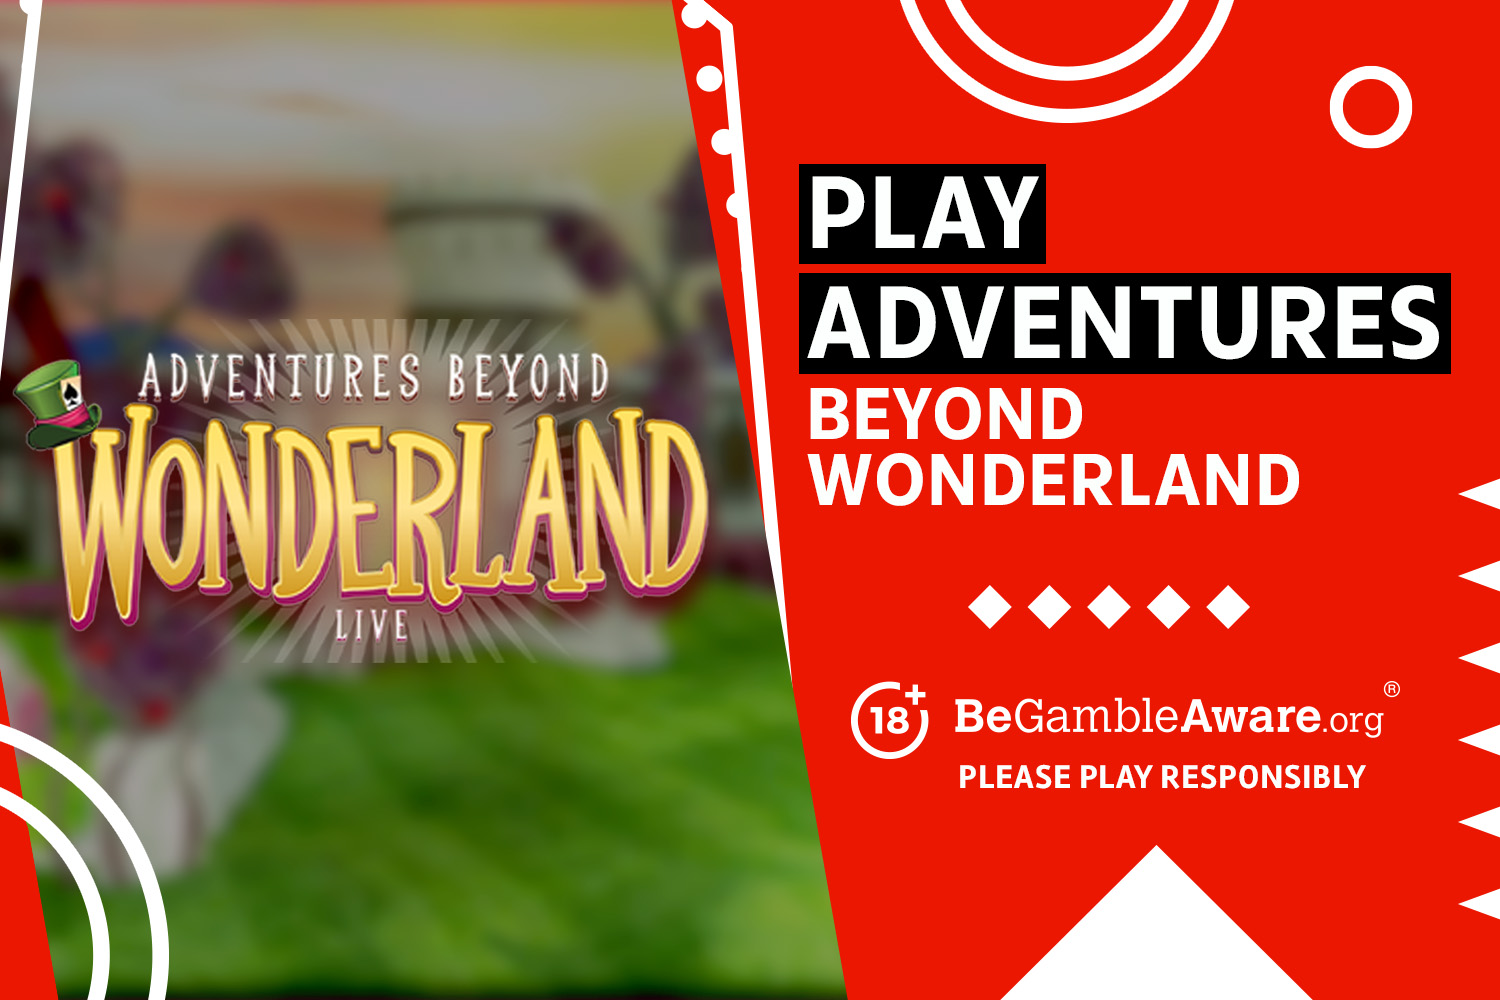 Play Adventures Beyond Wonderland. 18+ BeGambleAware.org Please play responsibly.